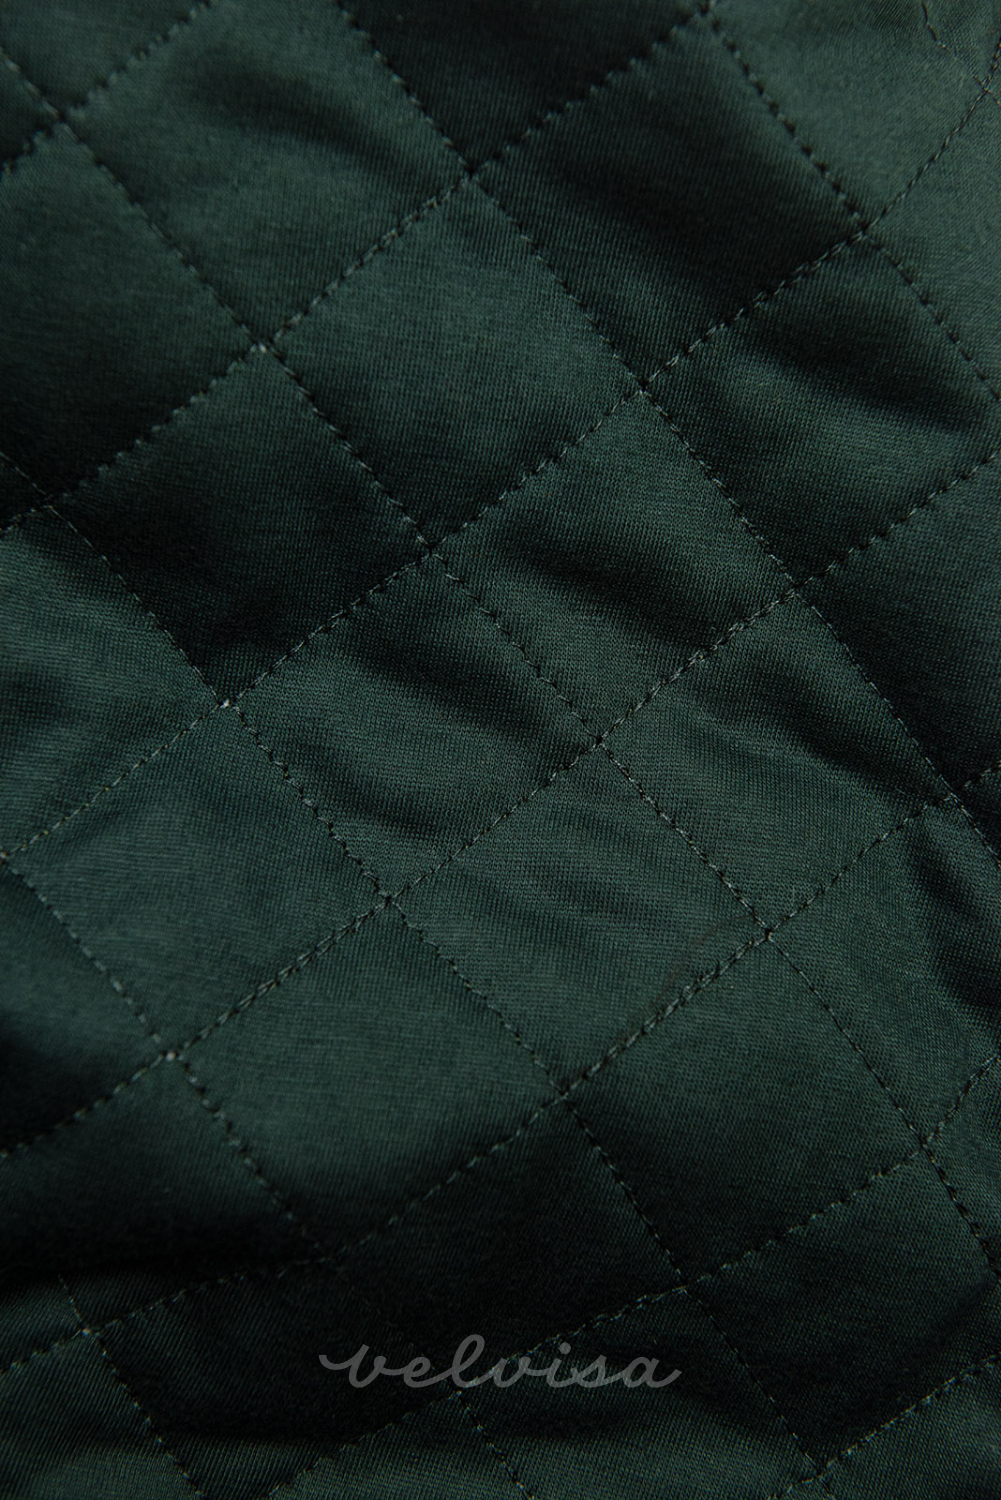 Smaragdno zelena produžena hoodica s prošivenom kapuljačom